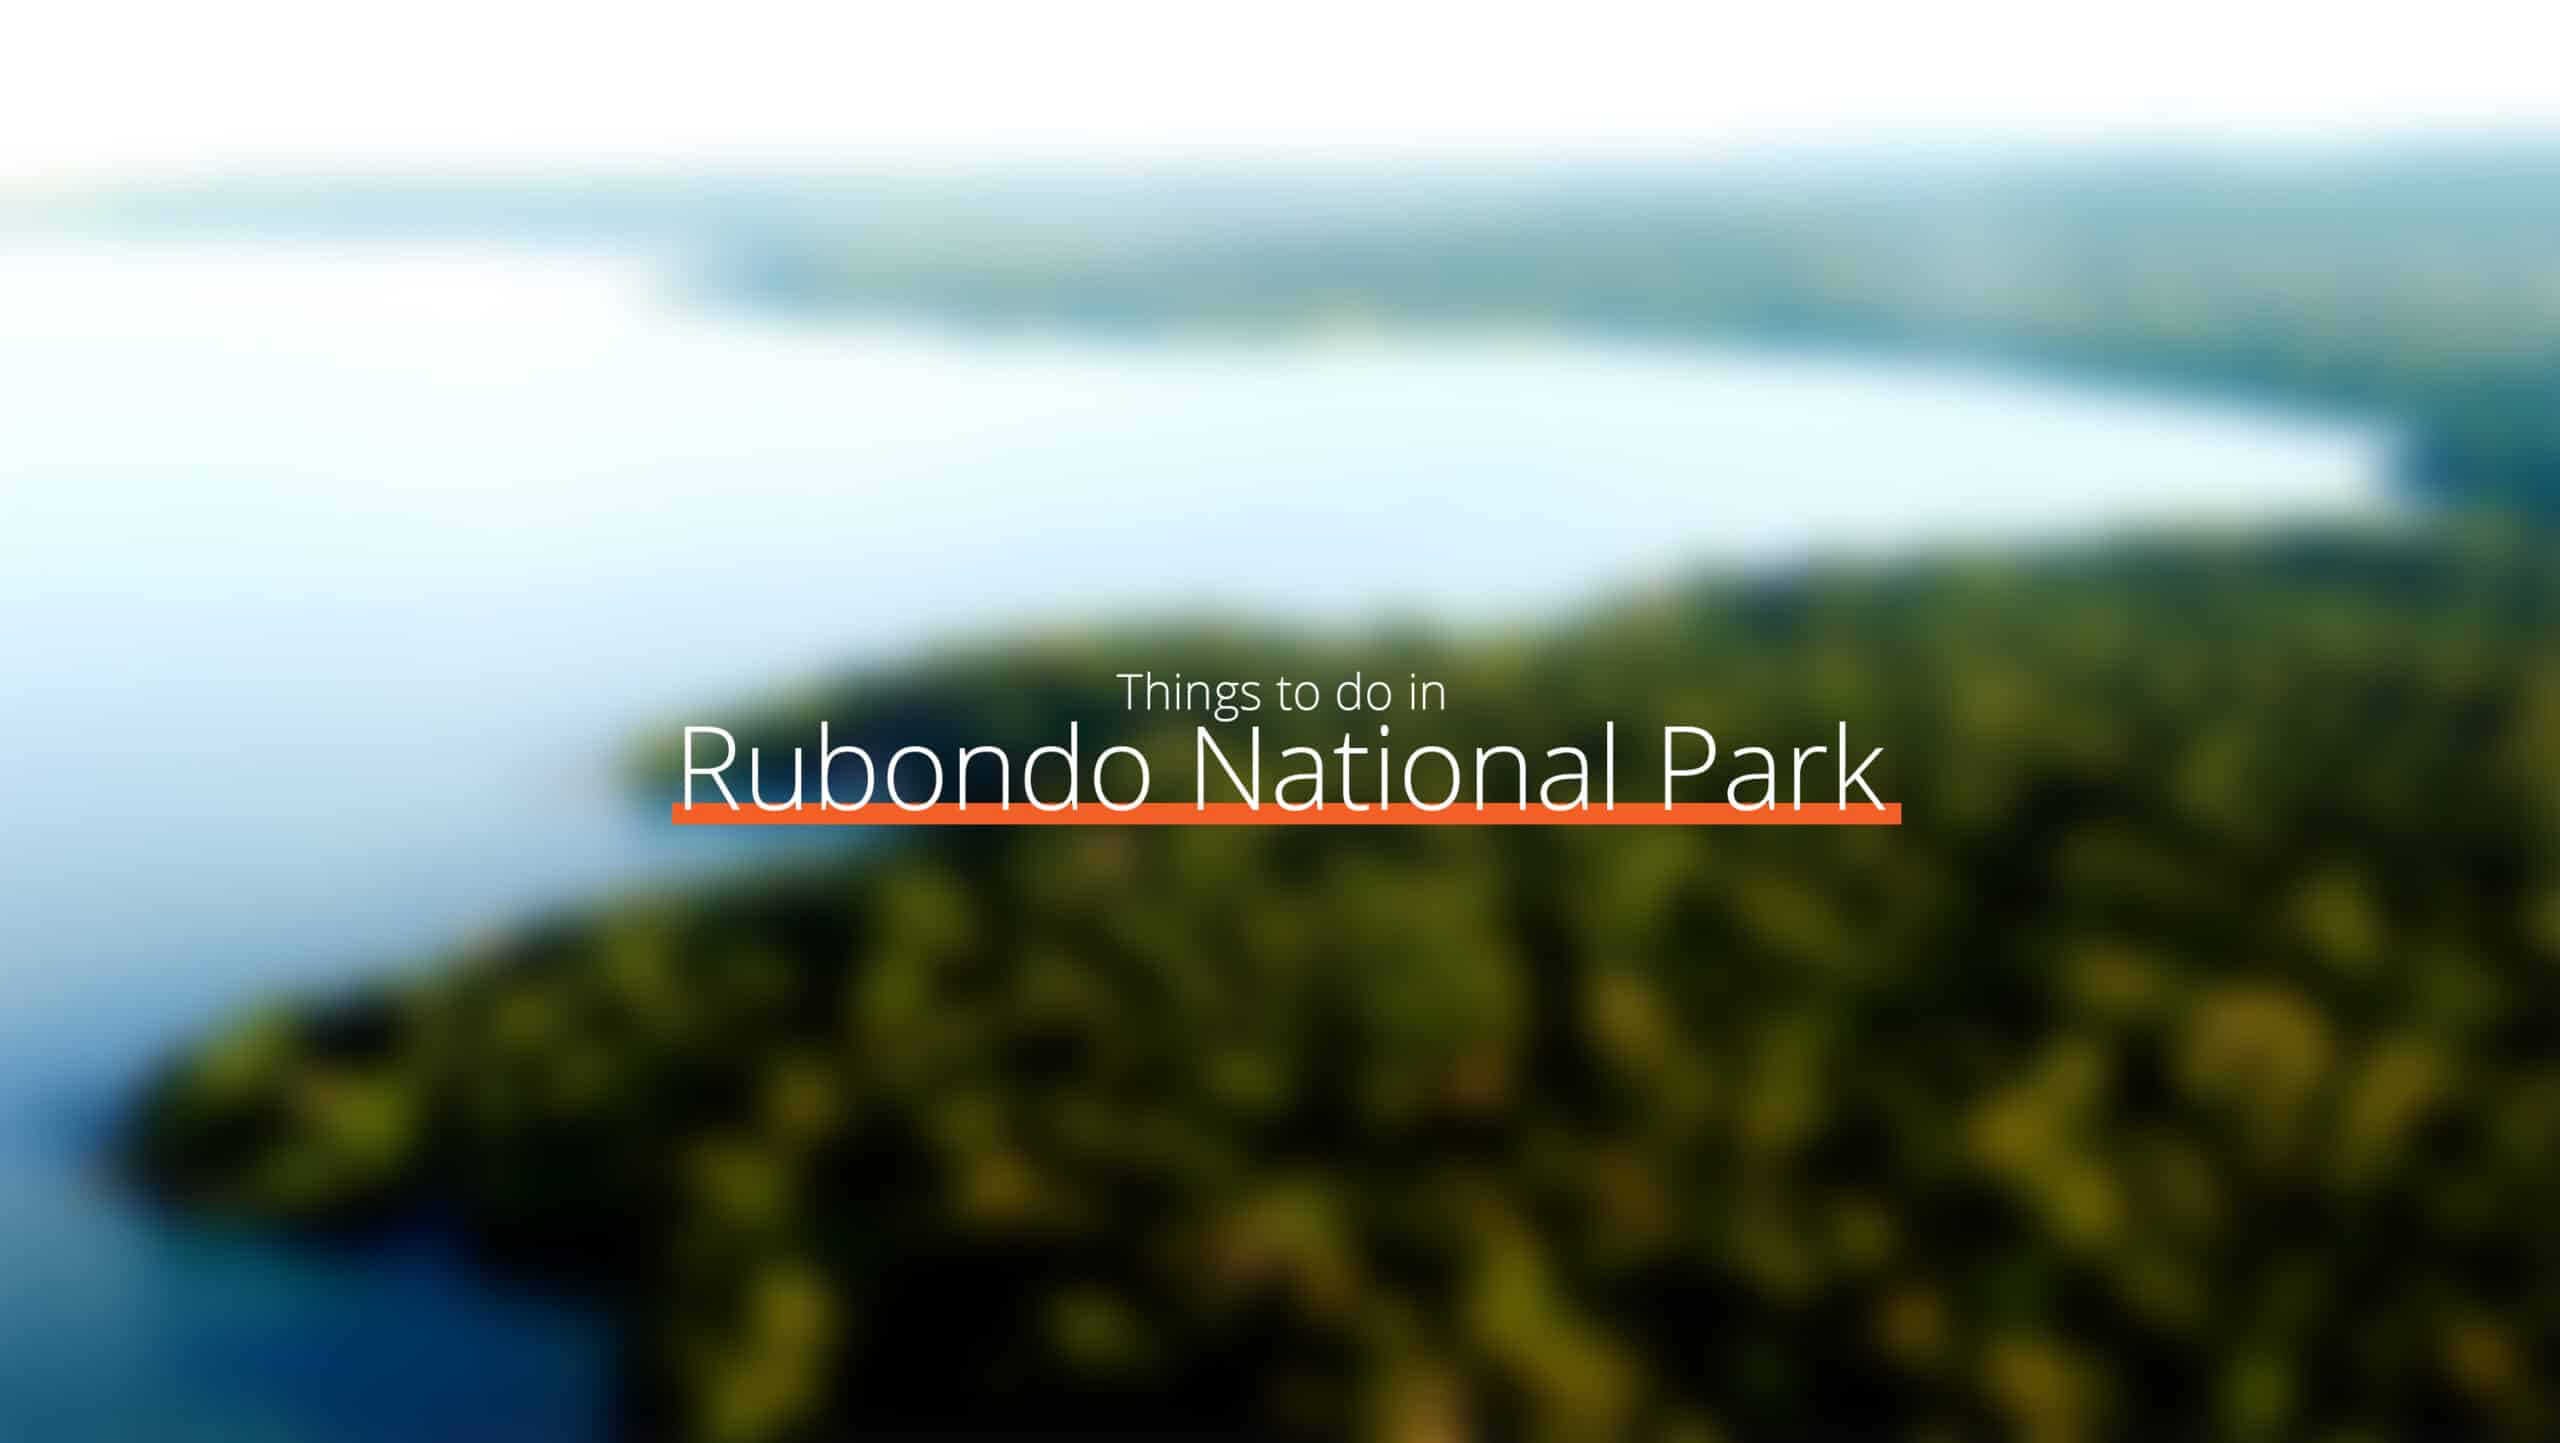 坦桑尼亚 - 鲁邦多国家公园规模扩大 - 东部环线的去处